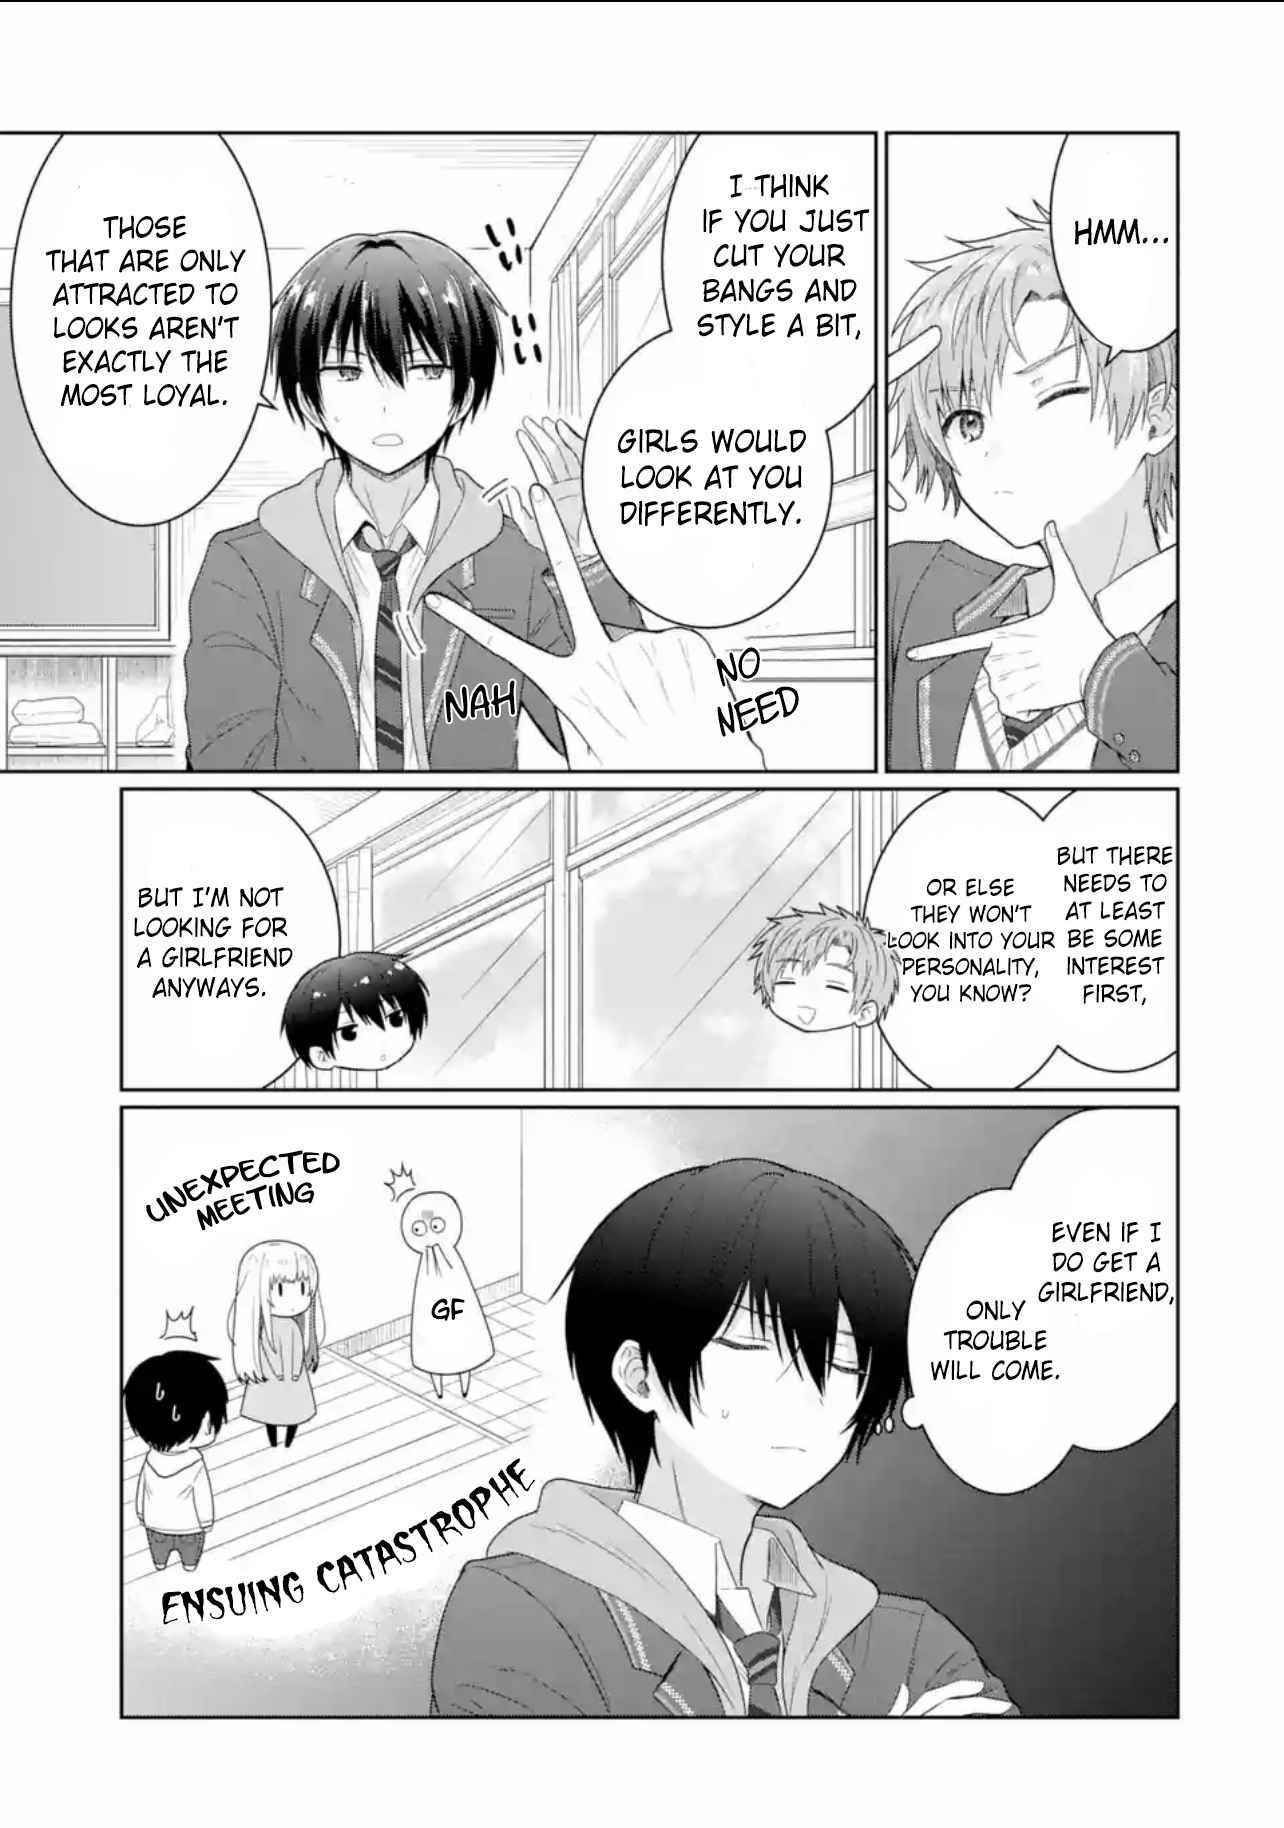 Read Manga The Angel Next Door Spoils Me Rotten - Chapter 6.1